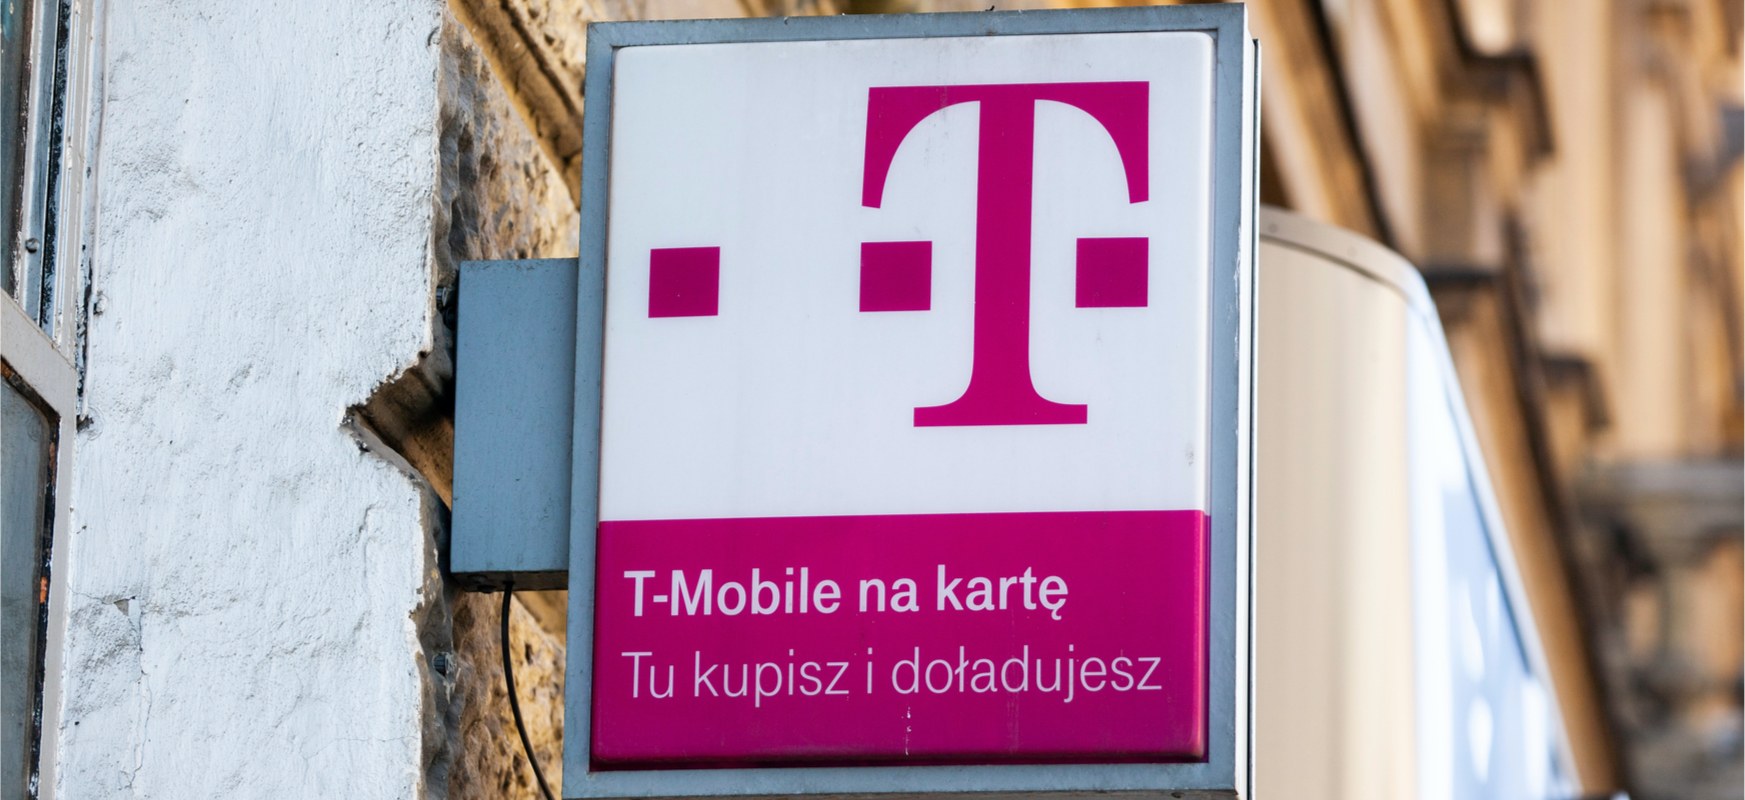 T-Mobile-k automatikoki hedatuko du aurrez ordaindutako kontuaren baliagarritasuna adinekoei